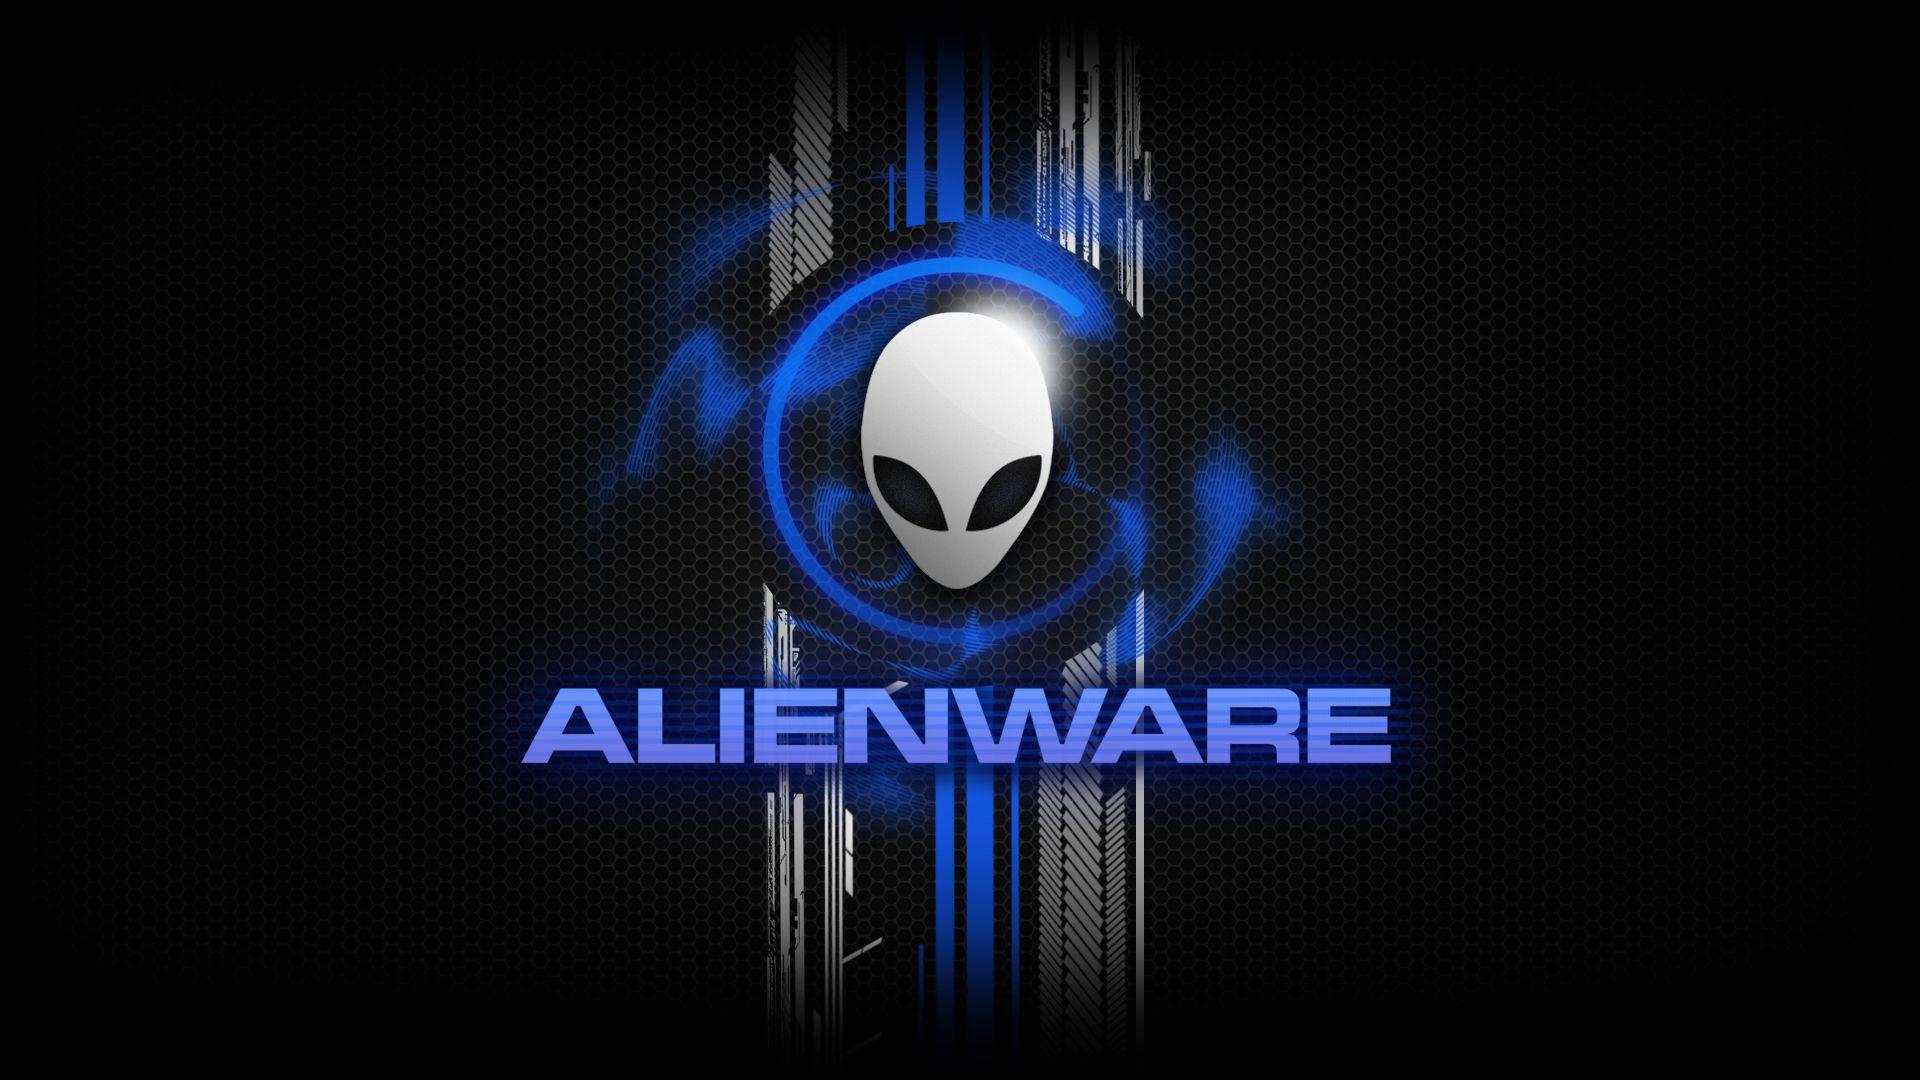 1920x1080 HD Alienware Wallpaper 1920x1080 & Alienware Background